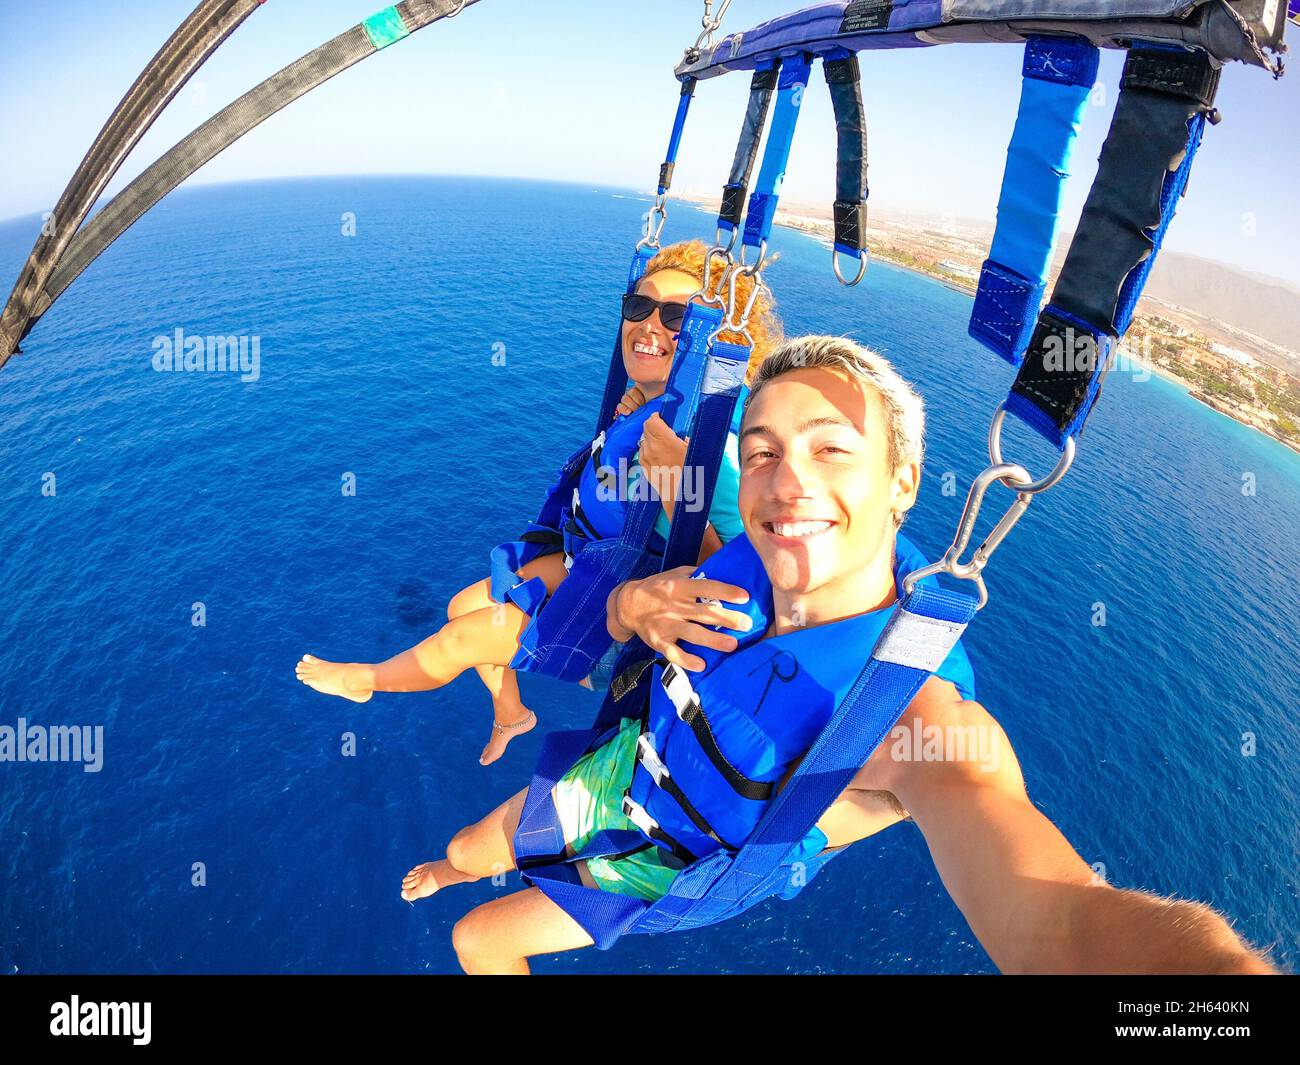 Ein paar von zwei glücklichen Menschen, die Sommer und Urlaub genießen und mit einem Boot extreme Aktivitäten auf dem Meer machen - wunderschöne Menschen, die ein Selfie machen, während sie gemeinsam Parascending machen Stockfoto